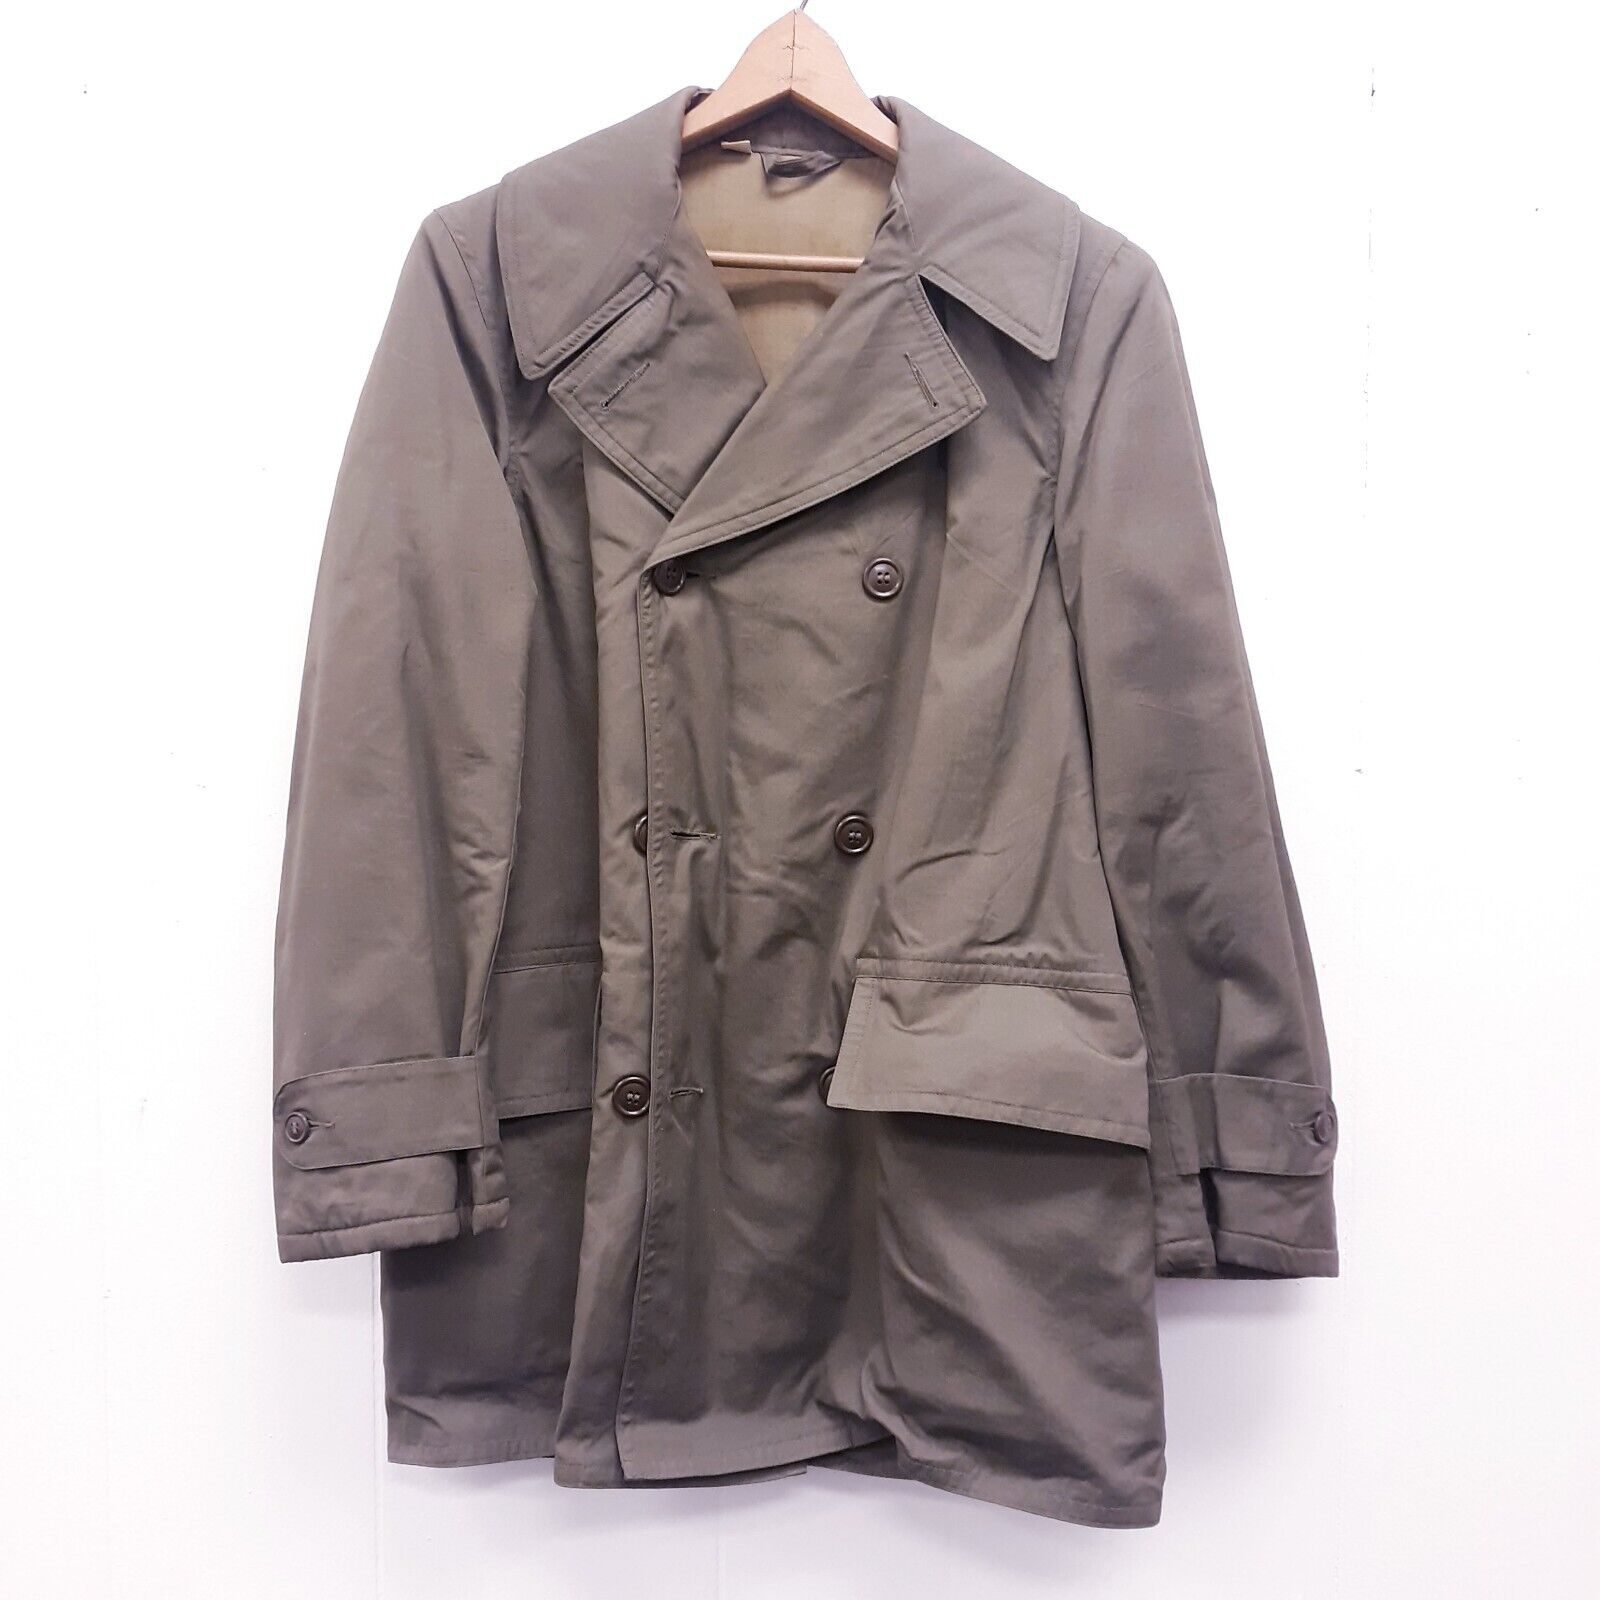 Vintage Mackinaw Coat Jacket Size 34 Olive 1945 ww2 Edward goldman military